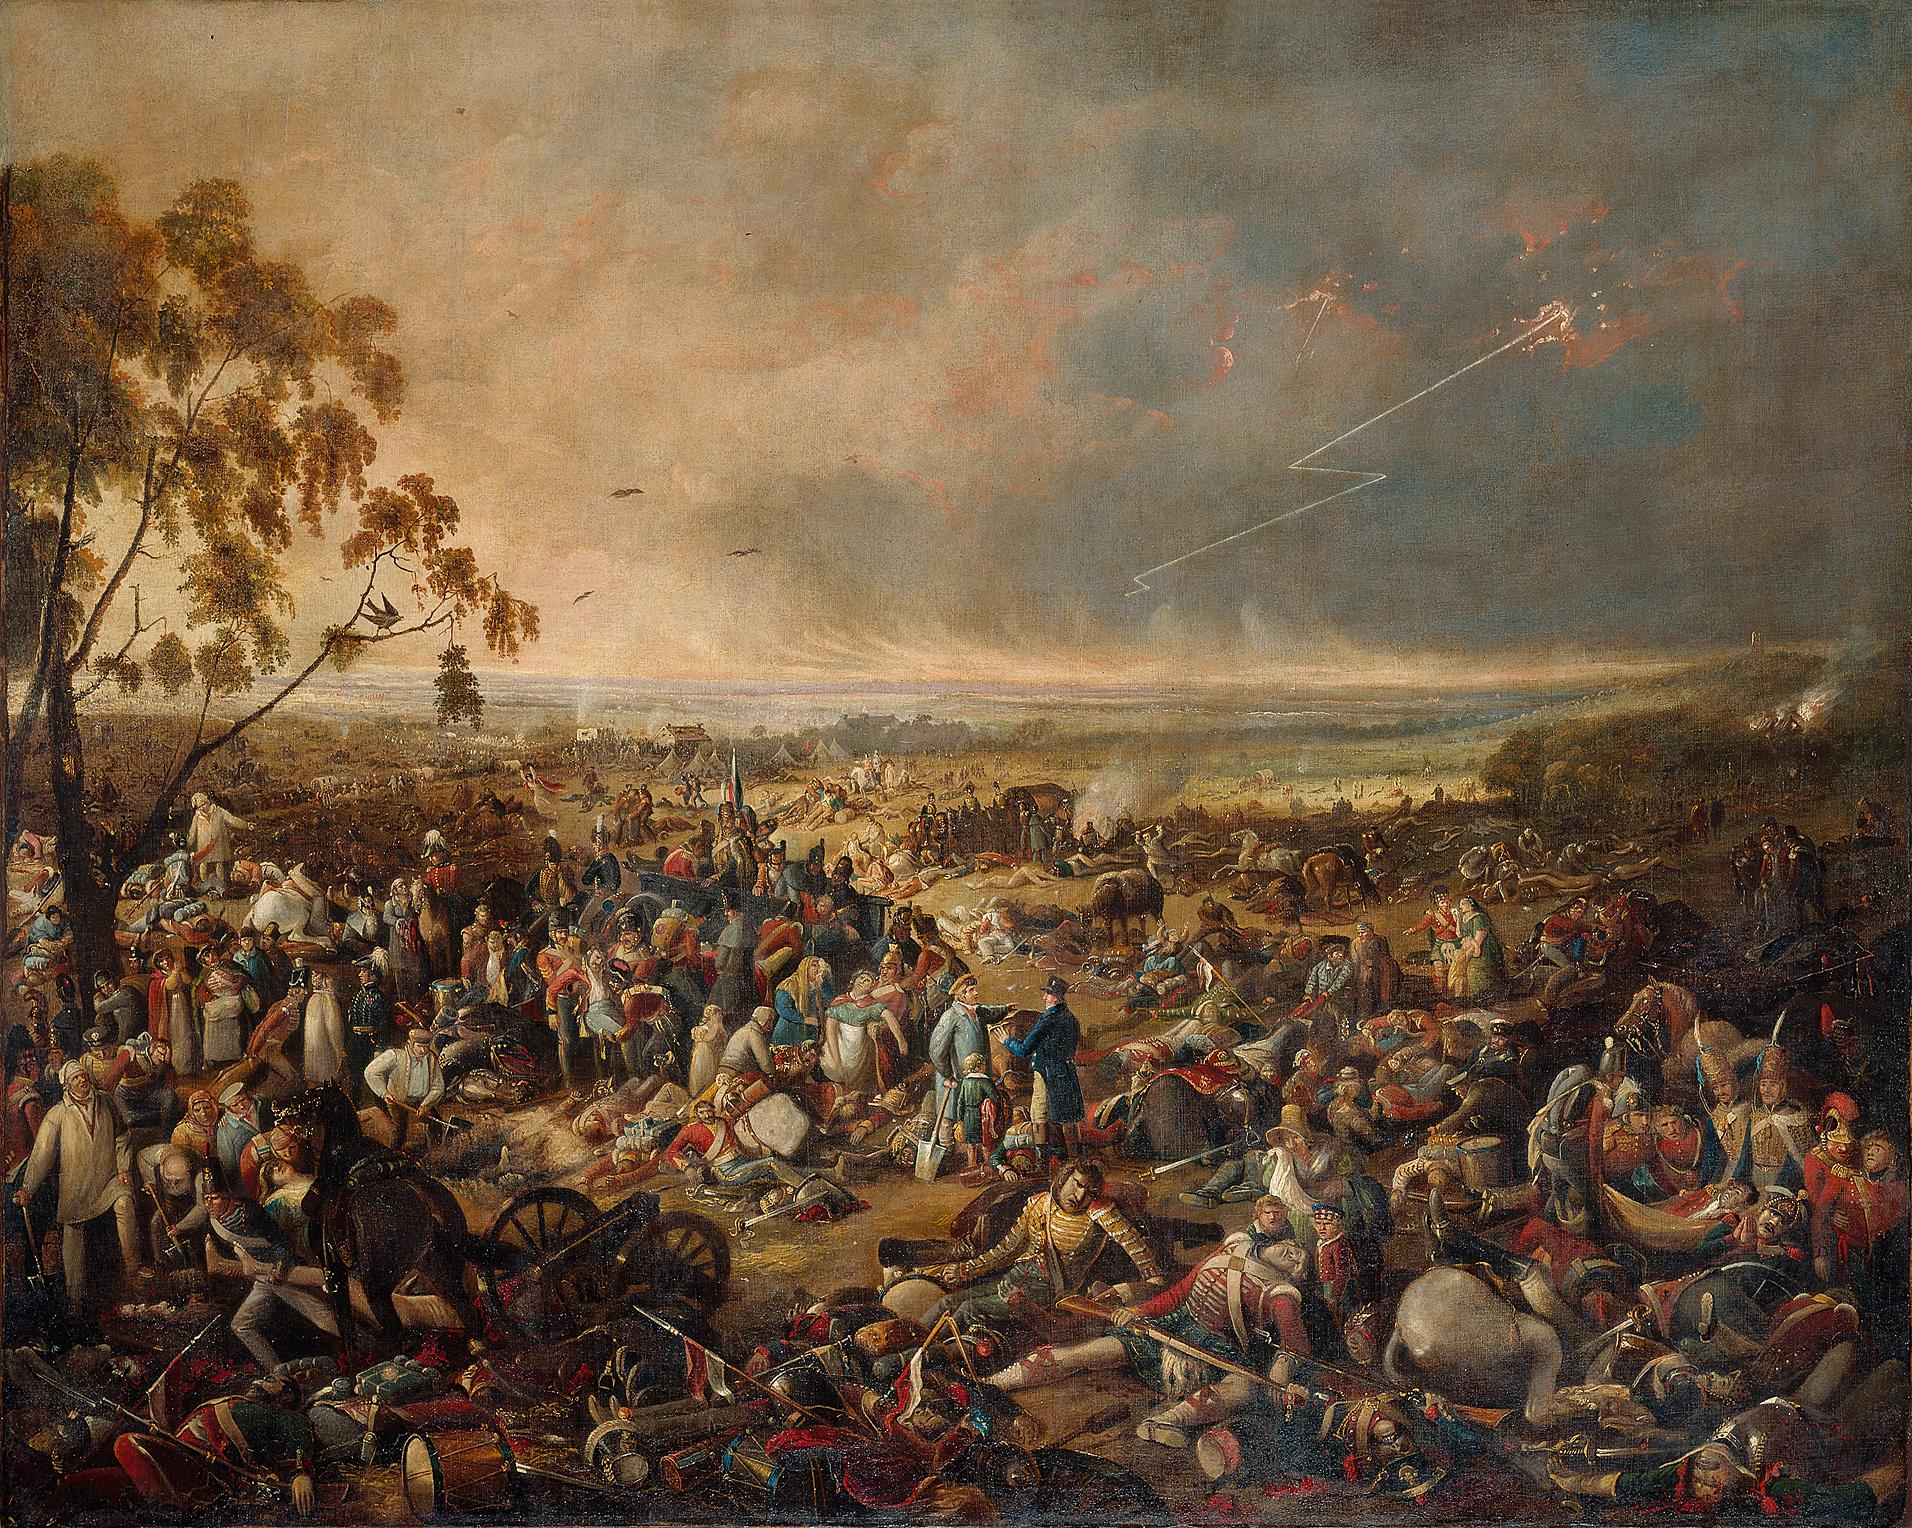 Το πρωί μετά τη Μάχη του Βατερλό, Τζον Χίβισαϊντ Κλαρκ (1816). Photo Credits: Wikimedia Commons